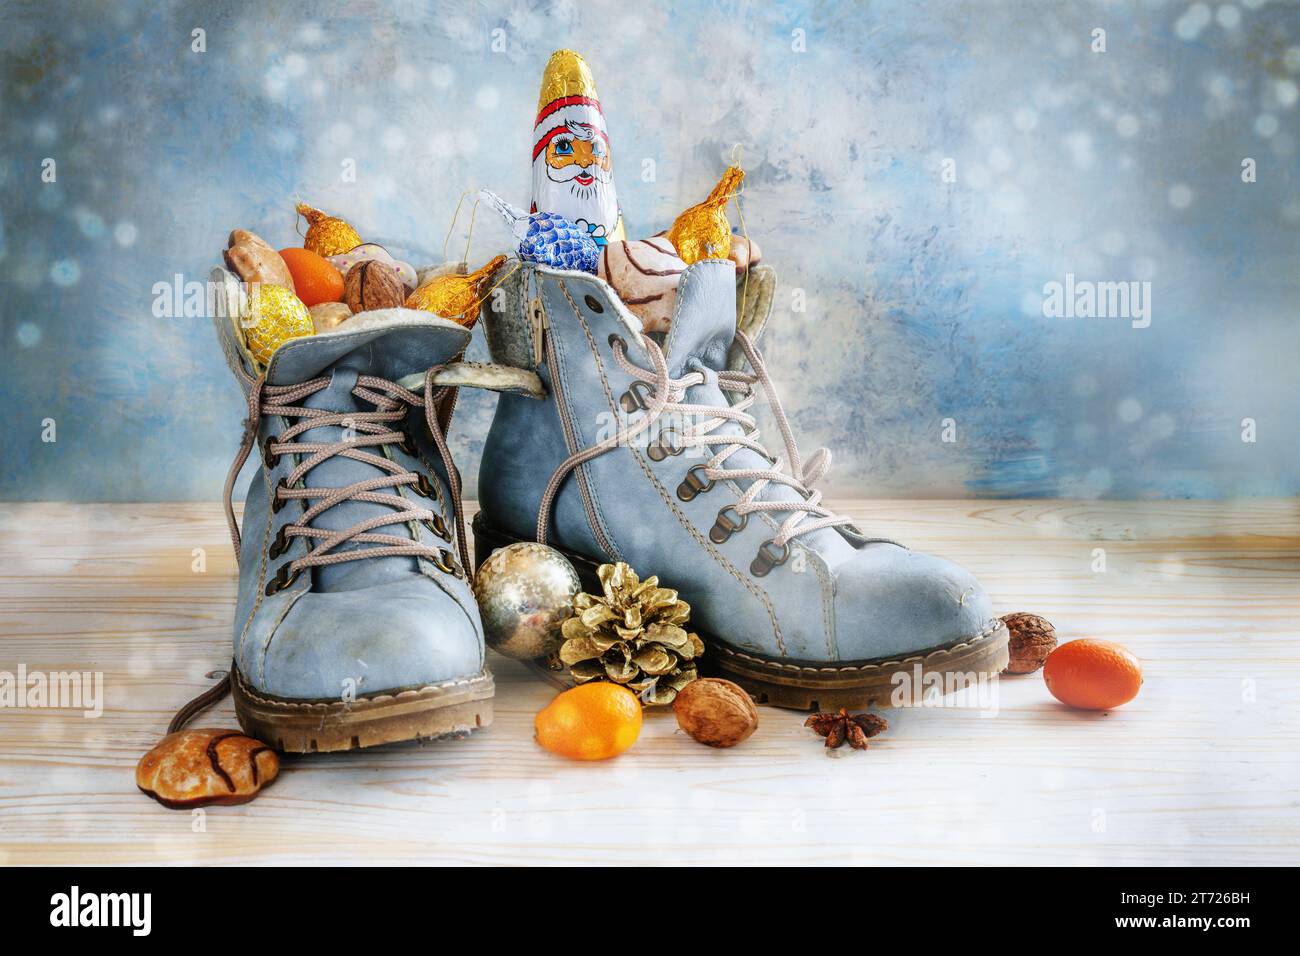 Wanderschuhe gefüllt mit Süßigkeiten, Früchten und Weihnachtsdekoration, Tradition auf Sinterklaas oder in Deutschland Nikolaus Tag am 6. Dezember, hellblauer boke Stockfoto